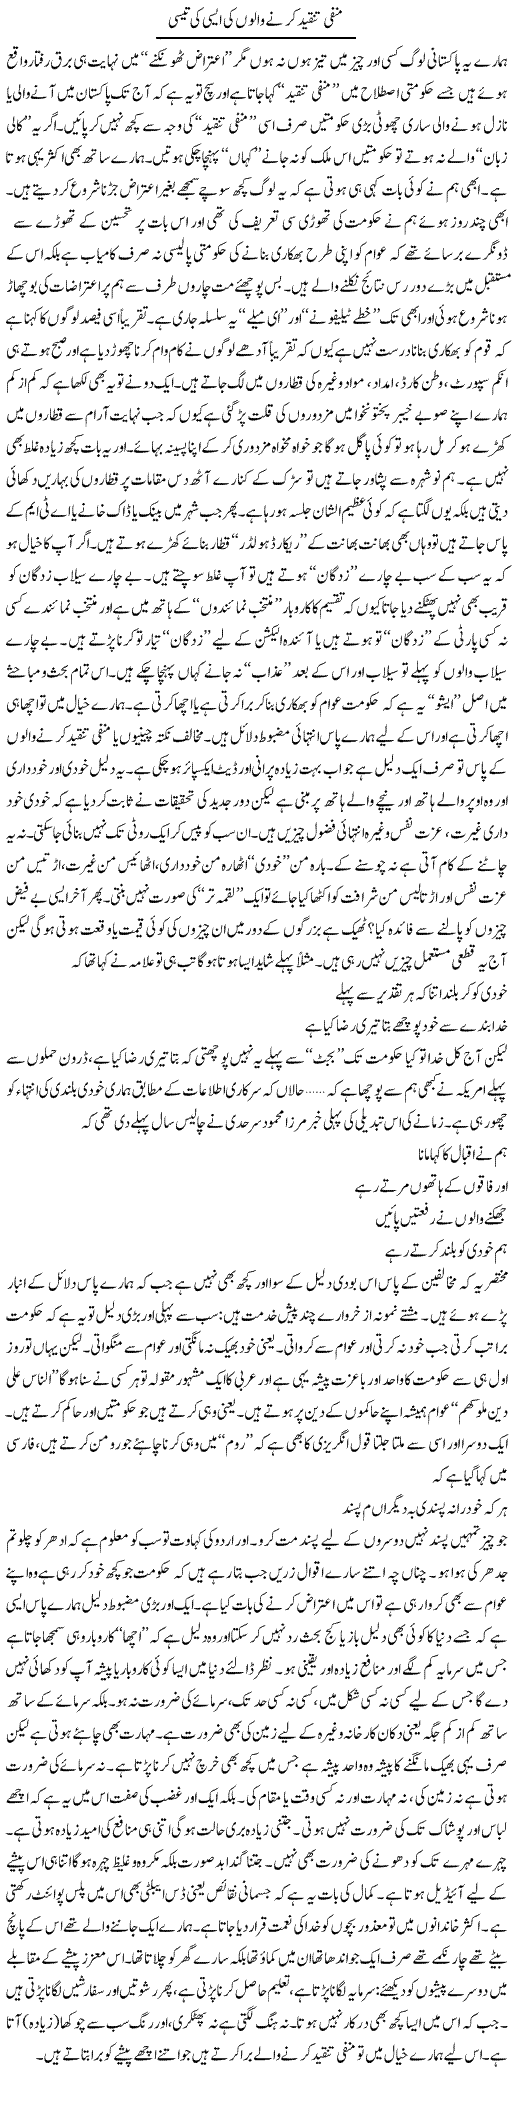 Negative Critics Express Column Saadullah Barq 24 October 2010